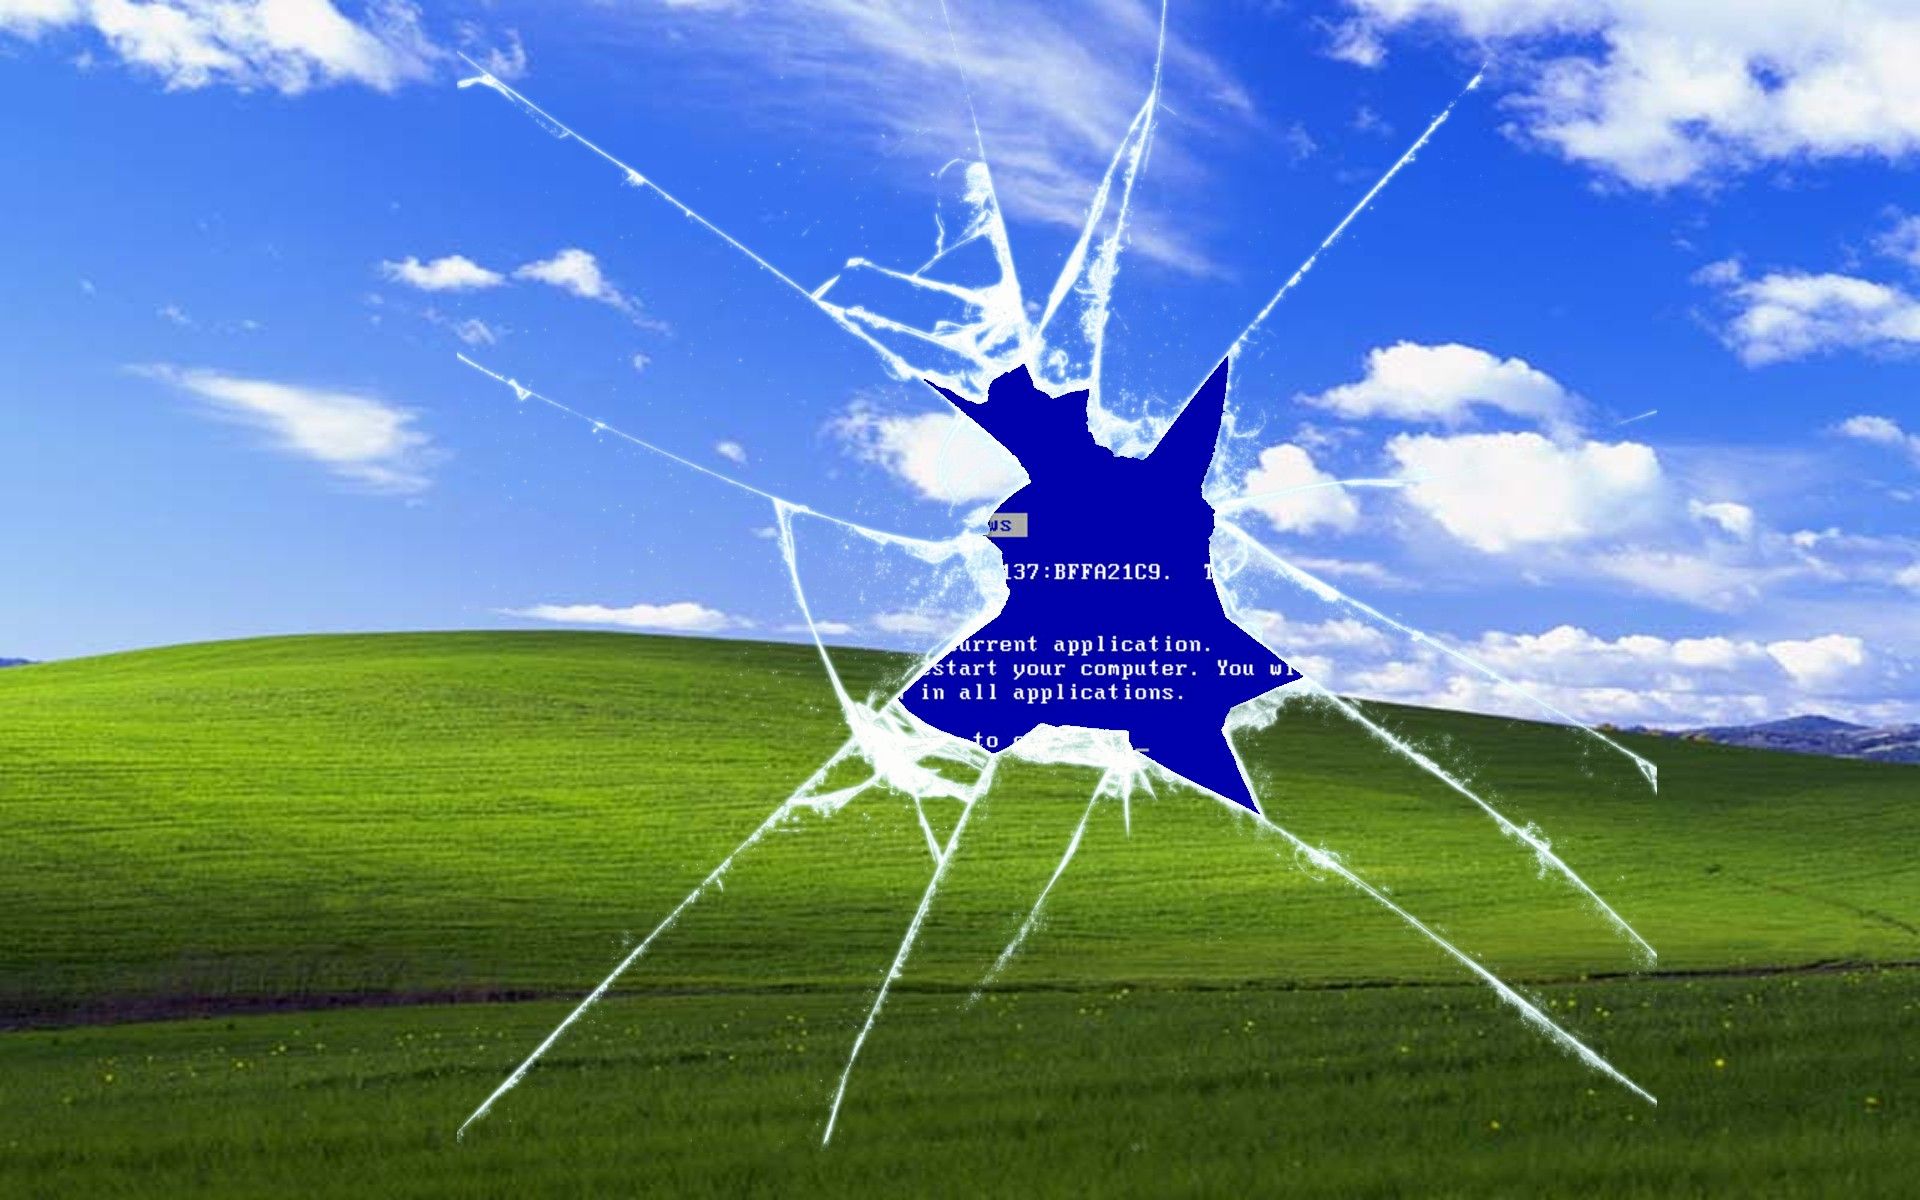 Windows XP is dead. Long live Windows XP 'Bliss': Digital ...